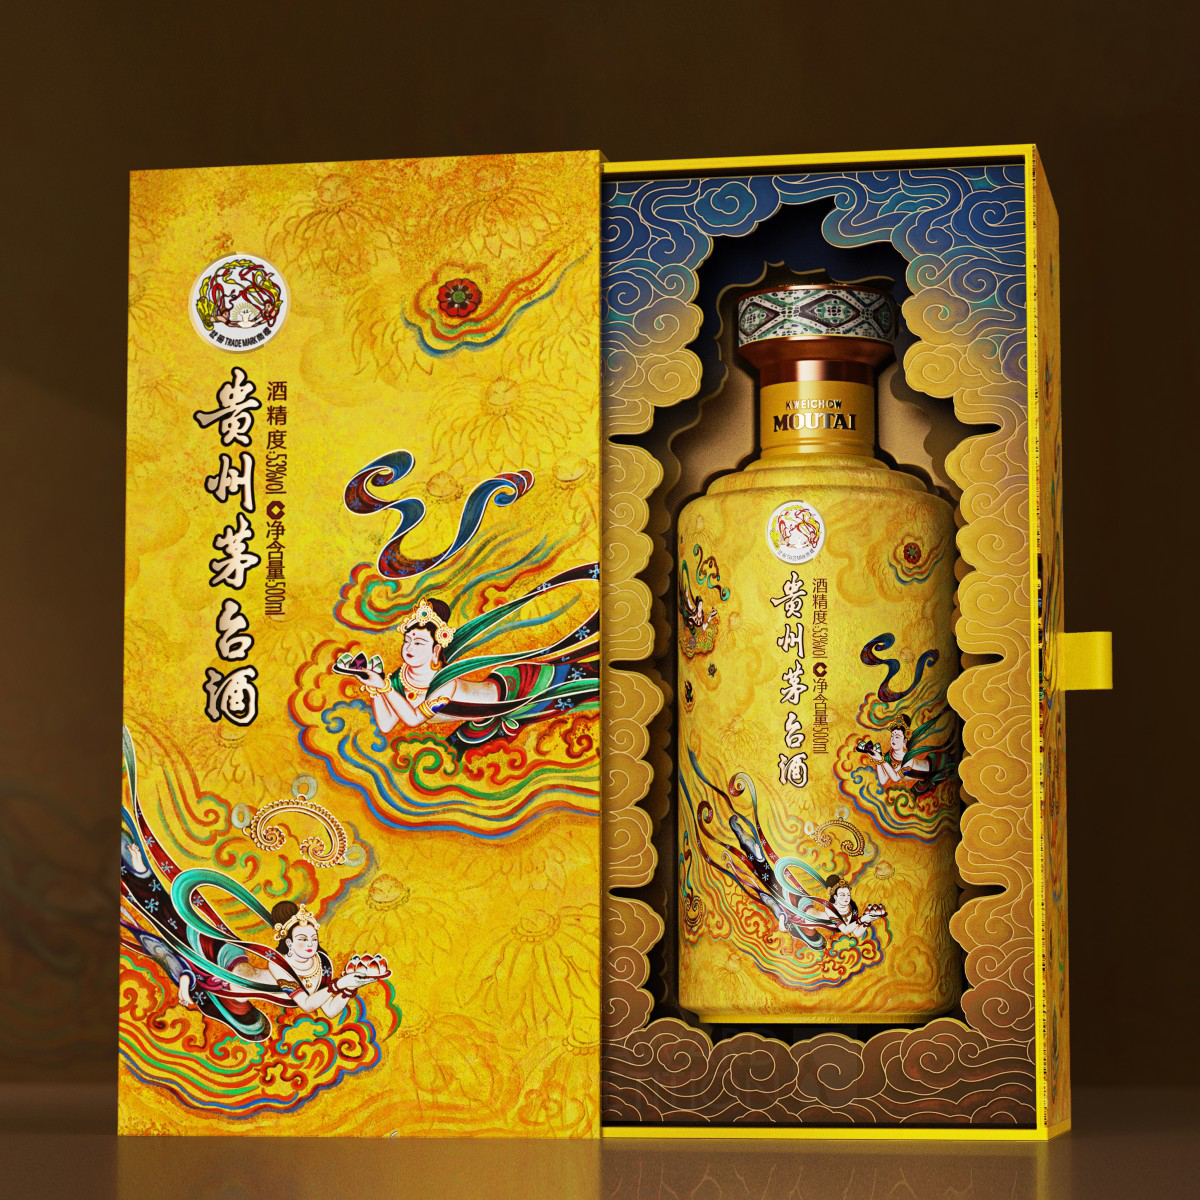 Kweichow Moutai Sanhua Flying Apsaras Baijiu Packaging by Ying Song Brand Design Co., Ltd